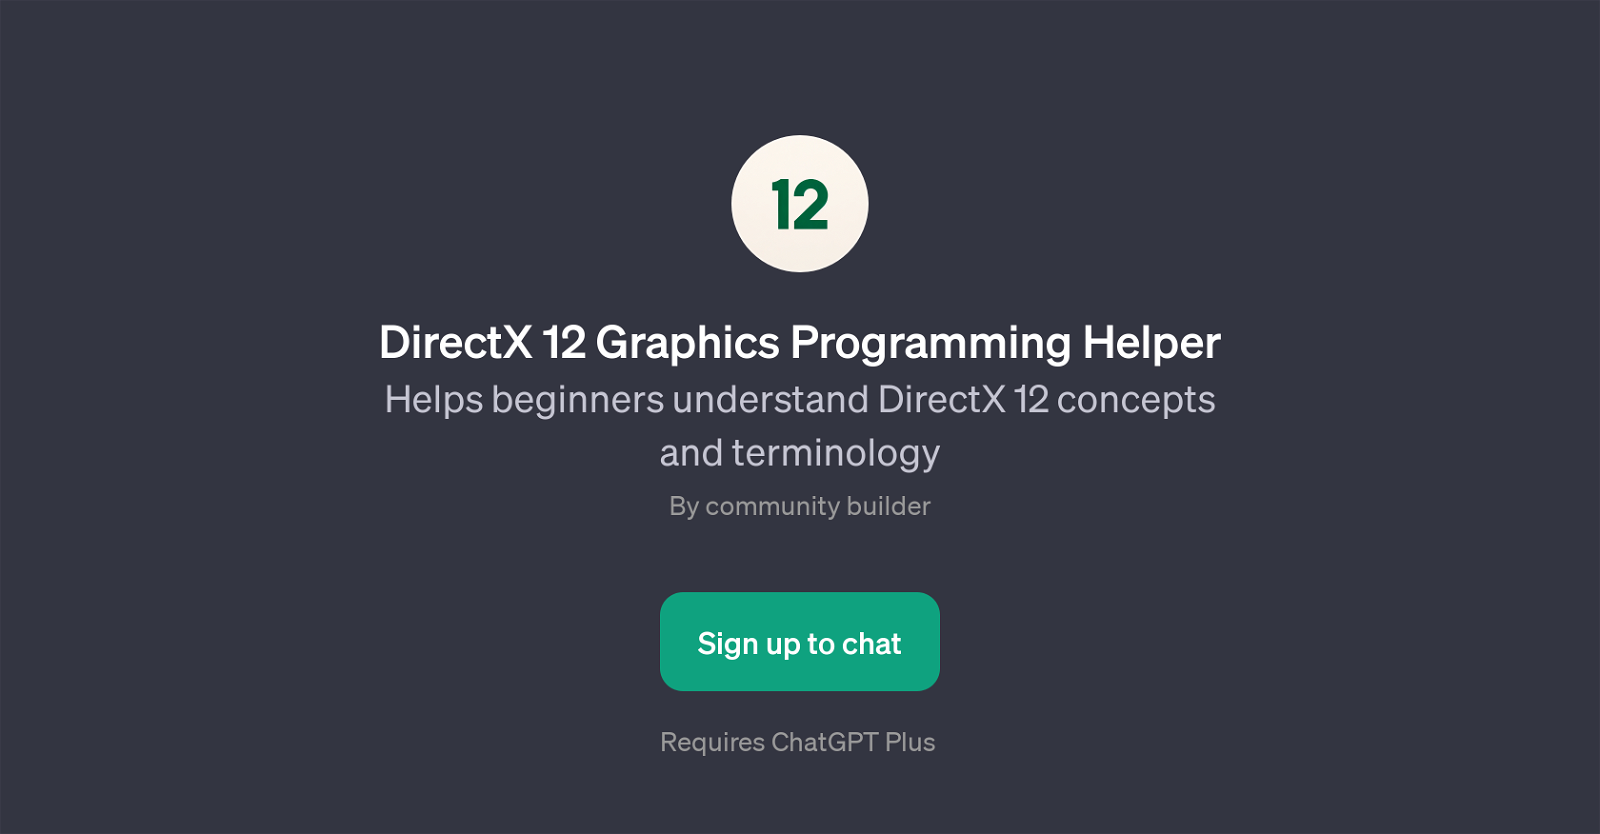 DirectX 12 Graphics Programming Helper website